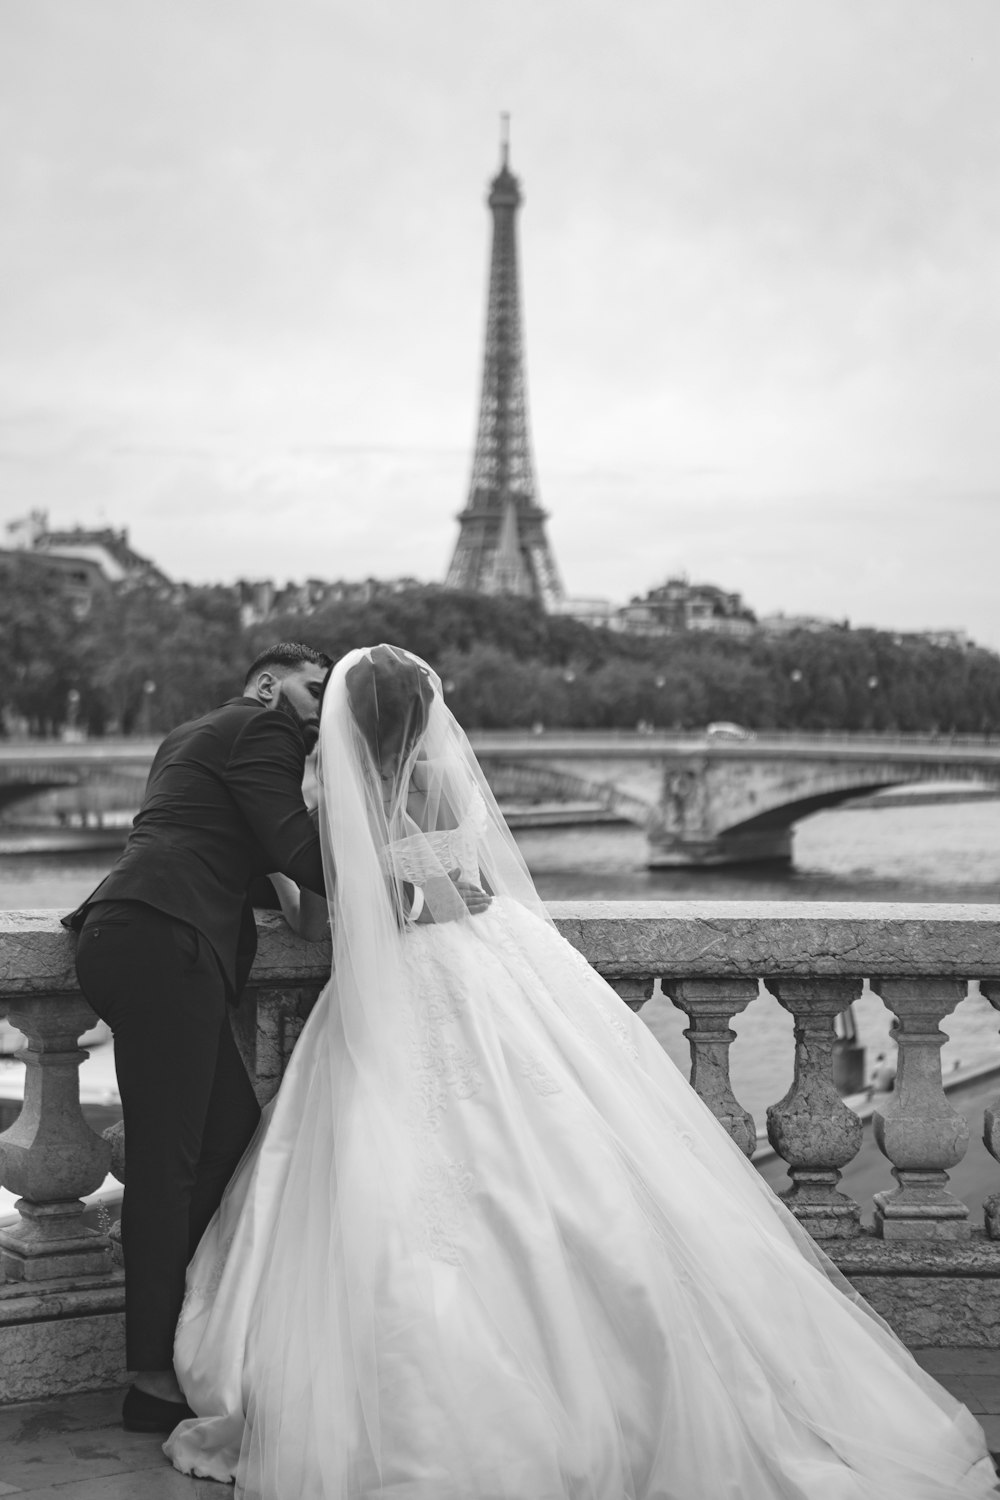 fotografia in scala di grigi della coppia di sposi di fronte alla Torre Eiffel